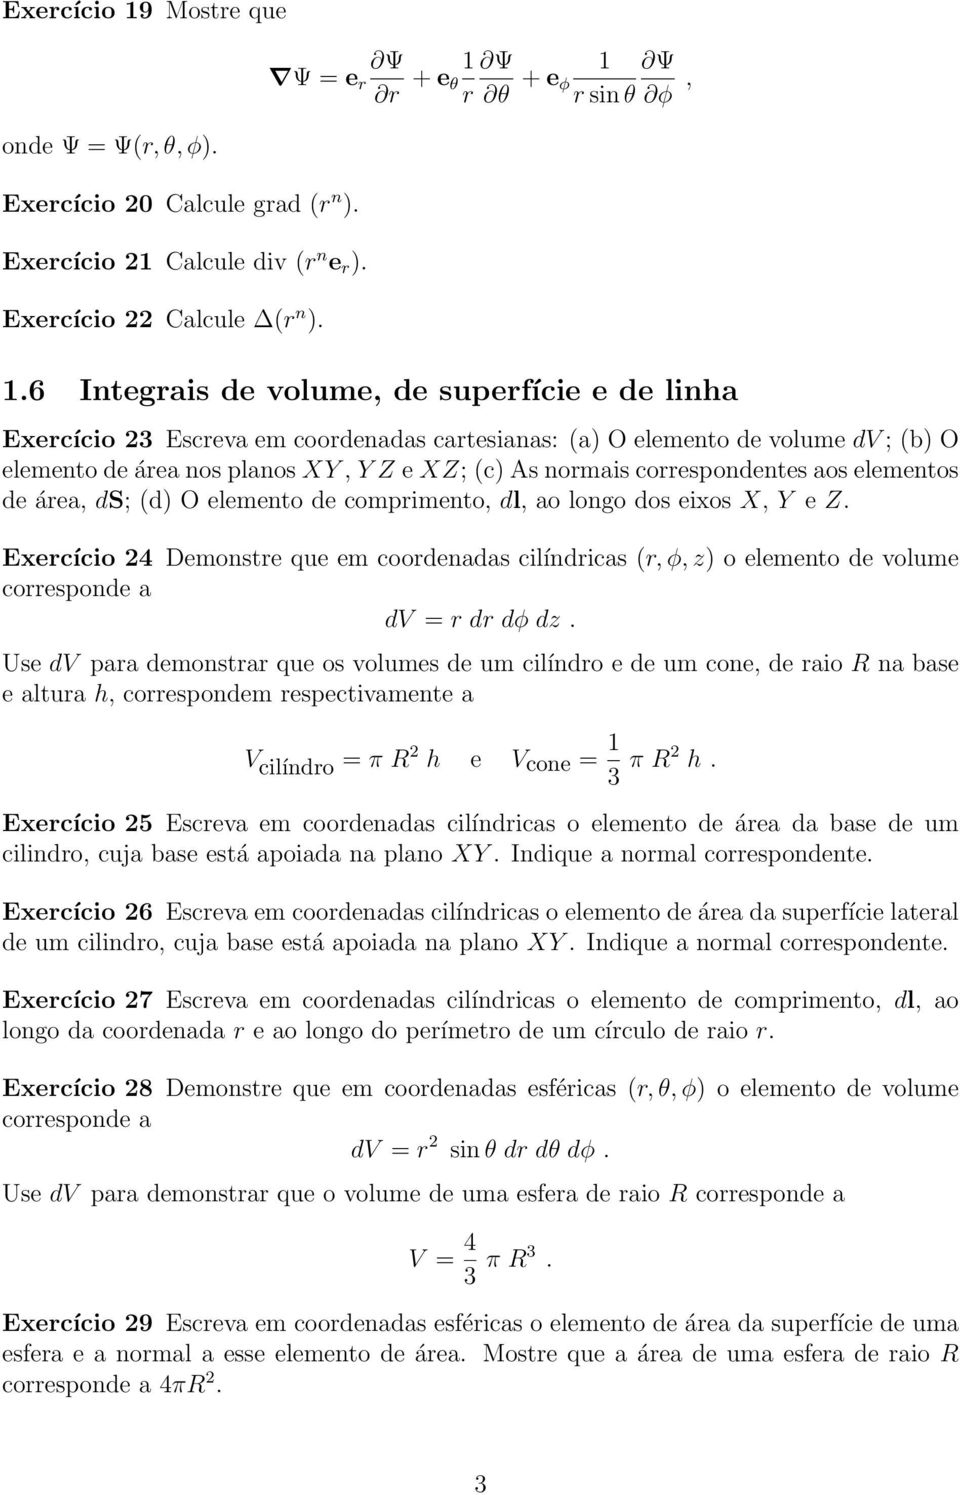 elementos de áre, ds; (d) O elemento de comprimento, dl, o longo dos eixos X, Y e Z. Exercício 24 Demonstre que em coordends cilíndrics (r, φ, z) o elemento de volume corresponde dv = r dr dφ dz.